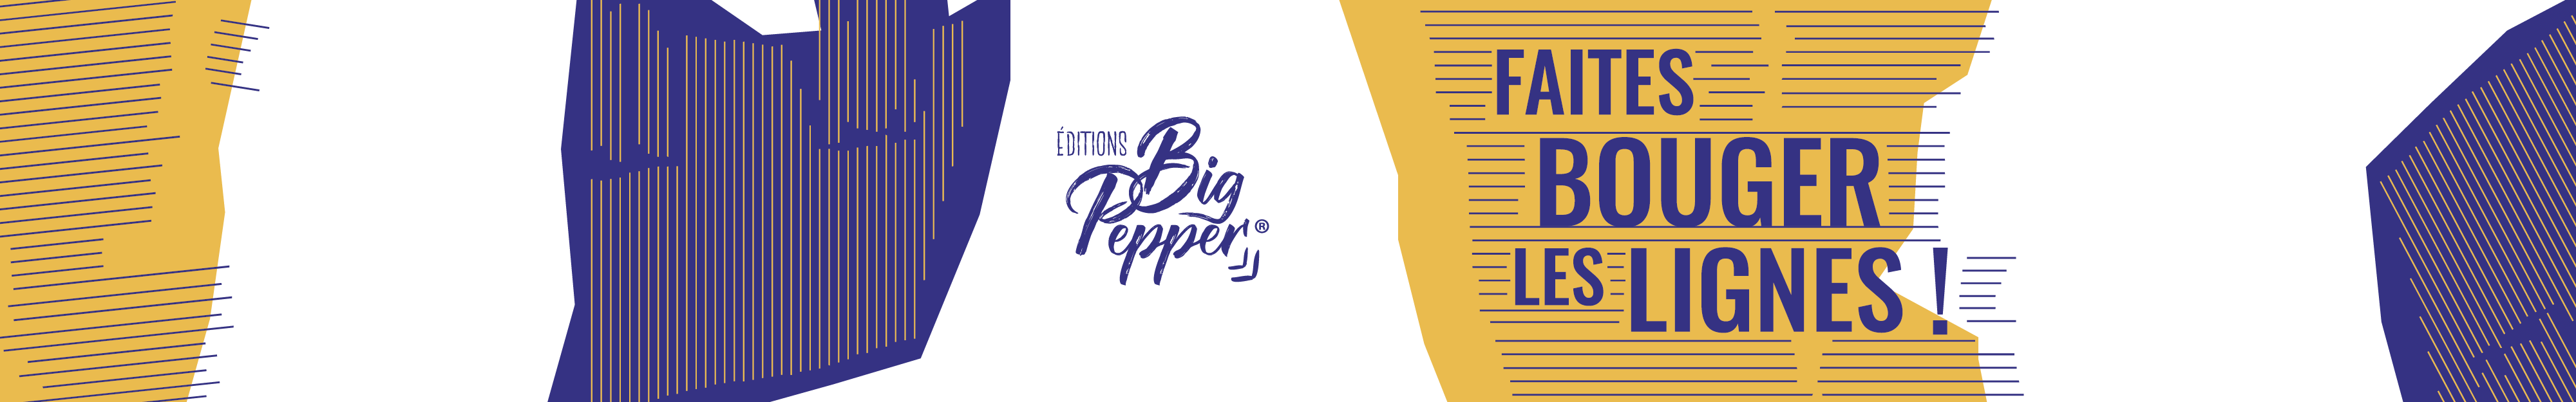 Maison d'édition Éditions Big Pepper Faites bouger les lignes livres Alexandre gros